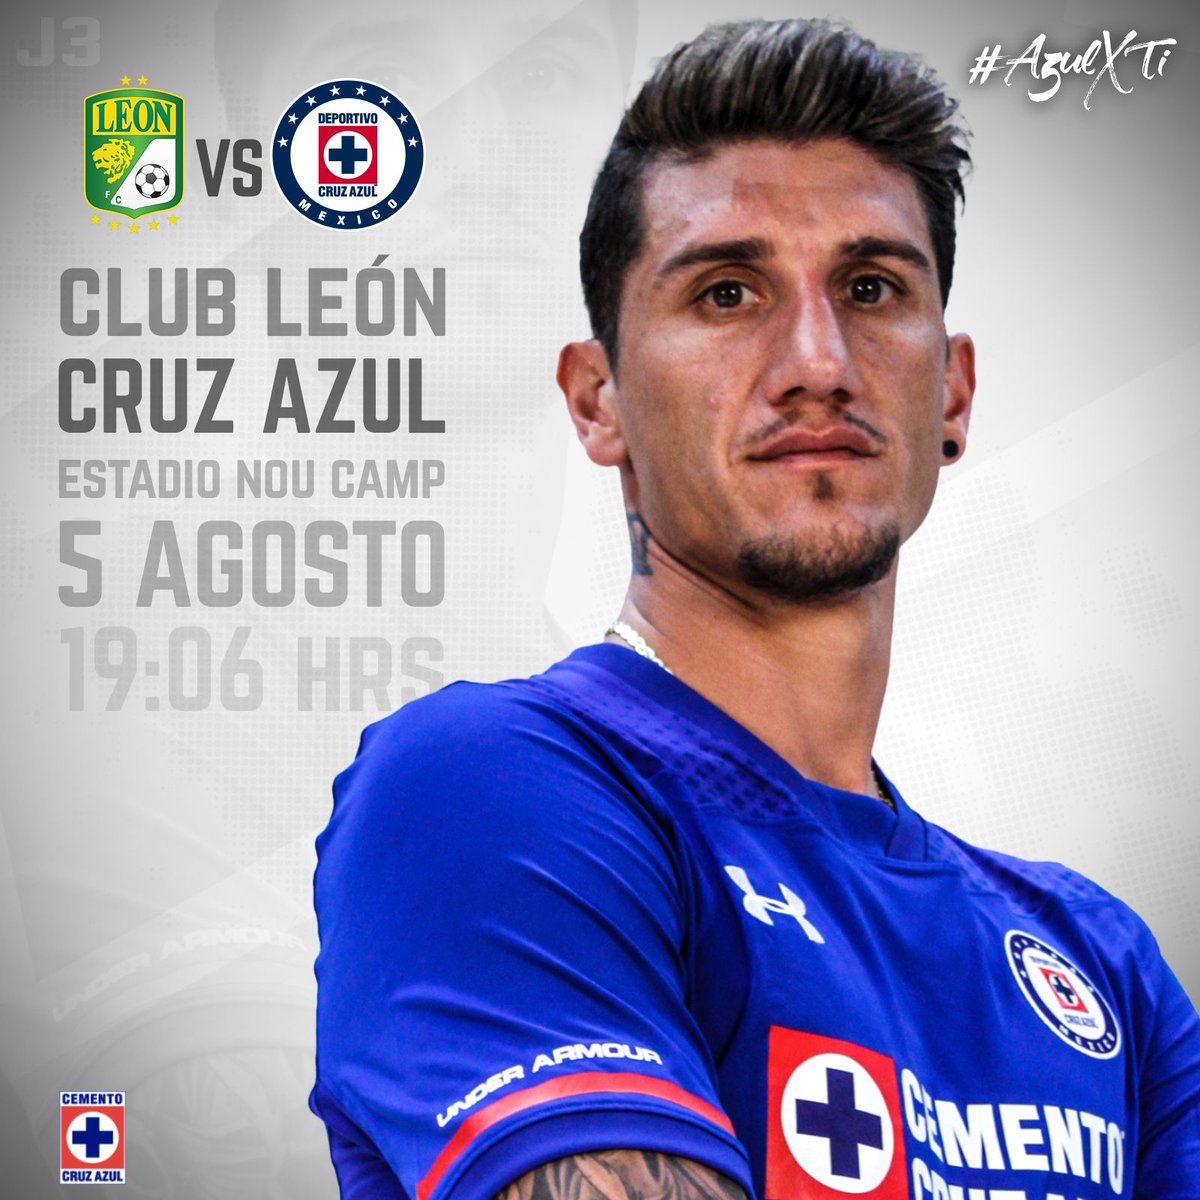 León vs Cruz Azul en Vivo por fox sports Liga MX 2017